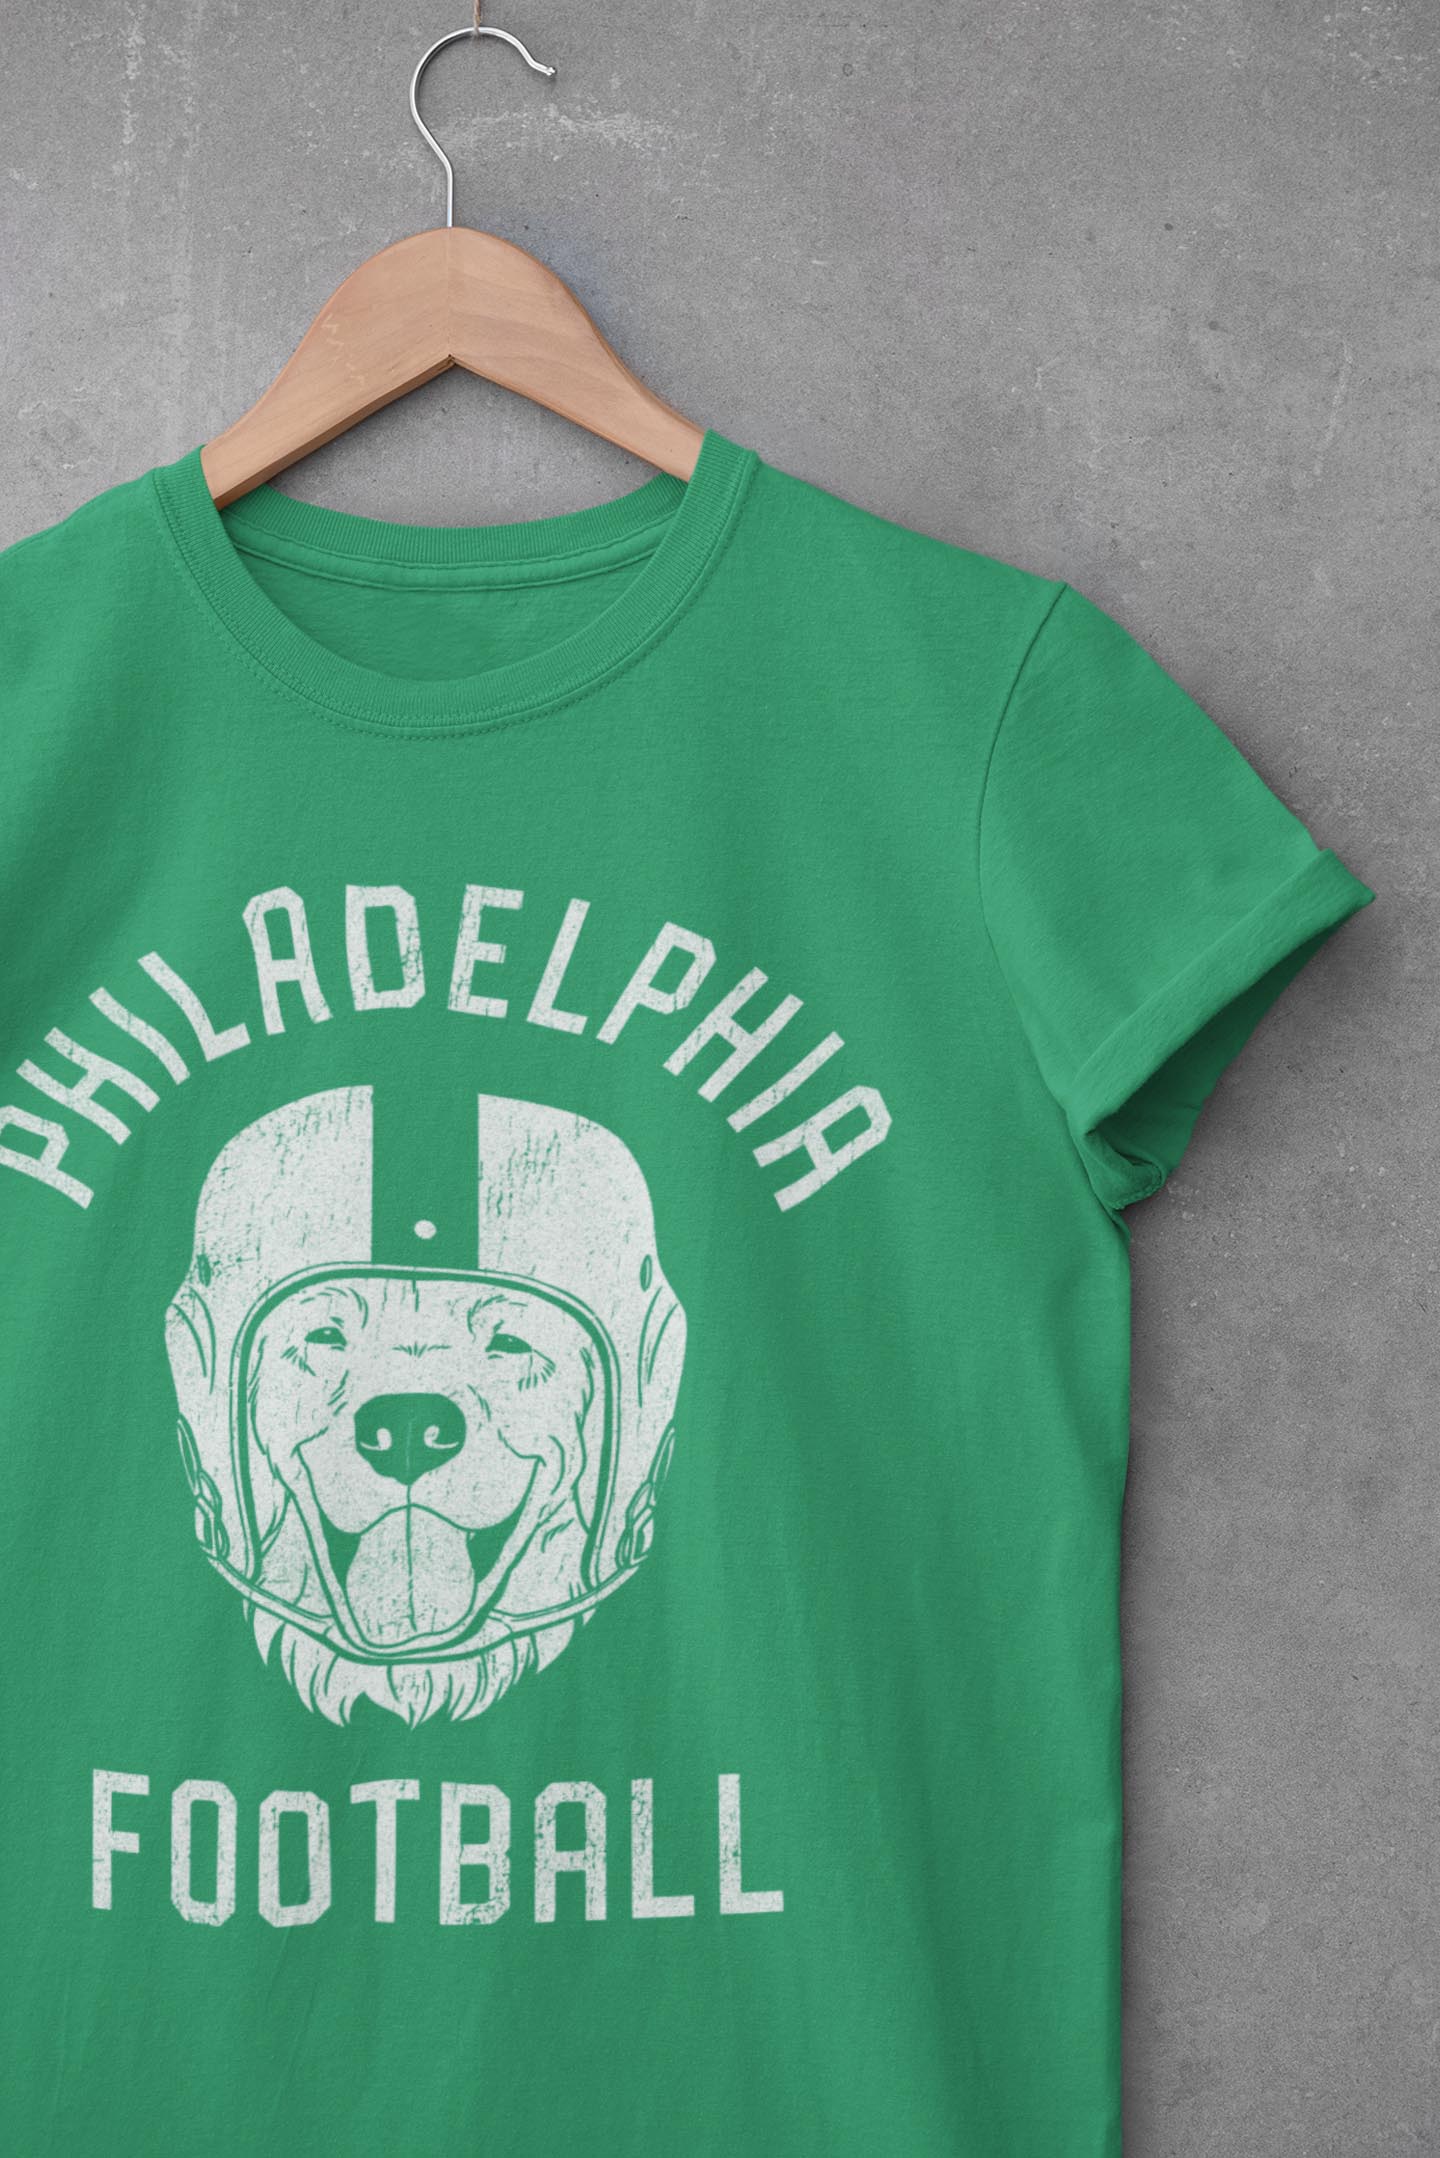 Philadelphia Football Golden Retriever T-Shirt